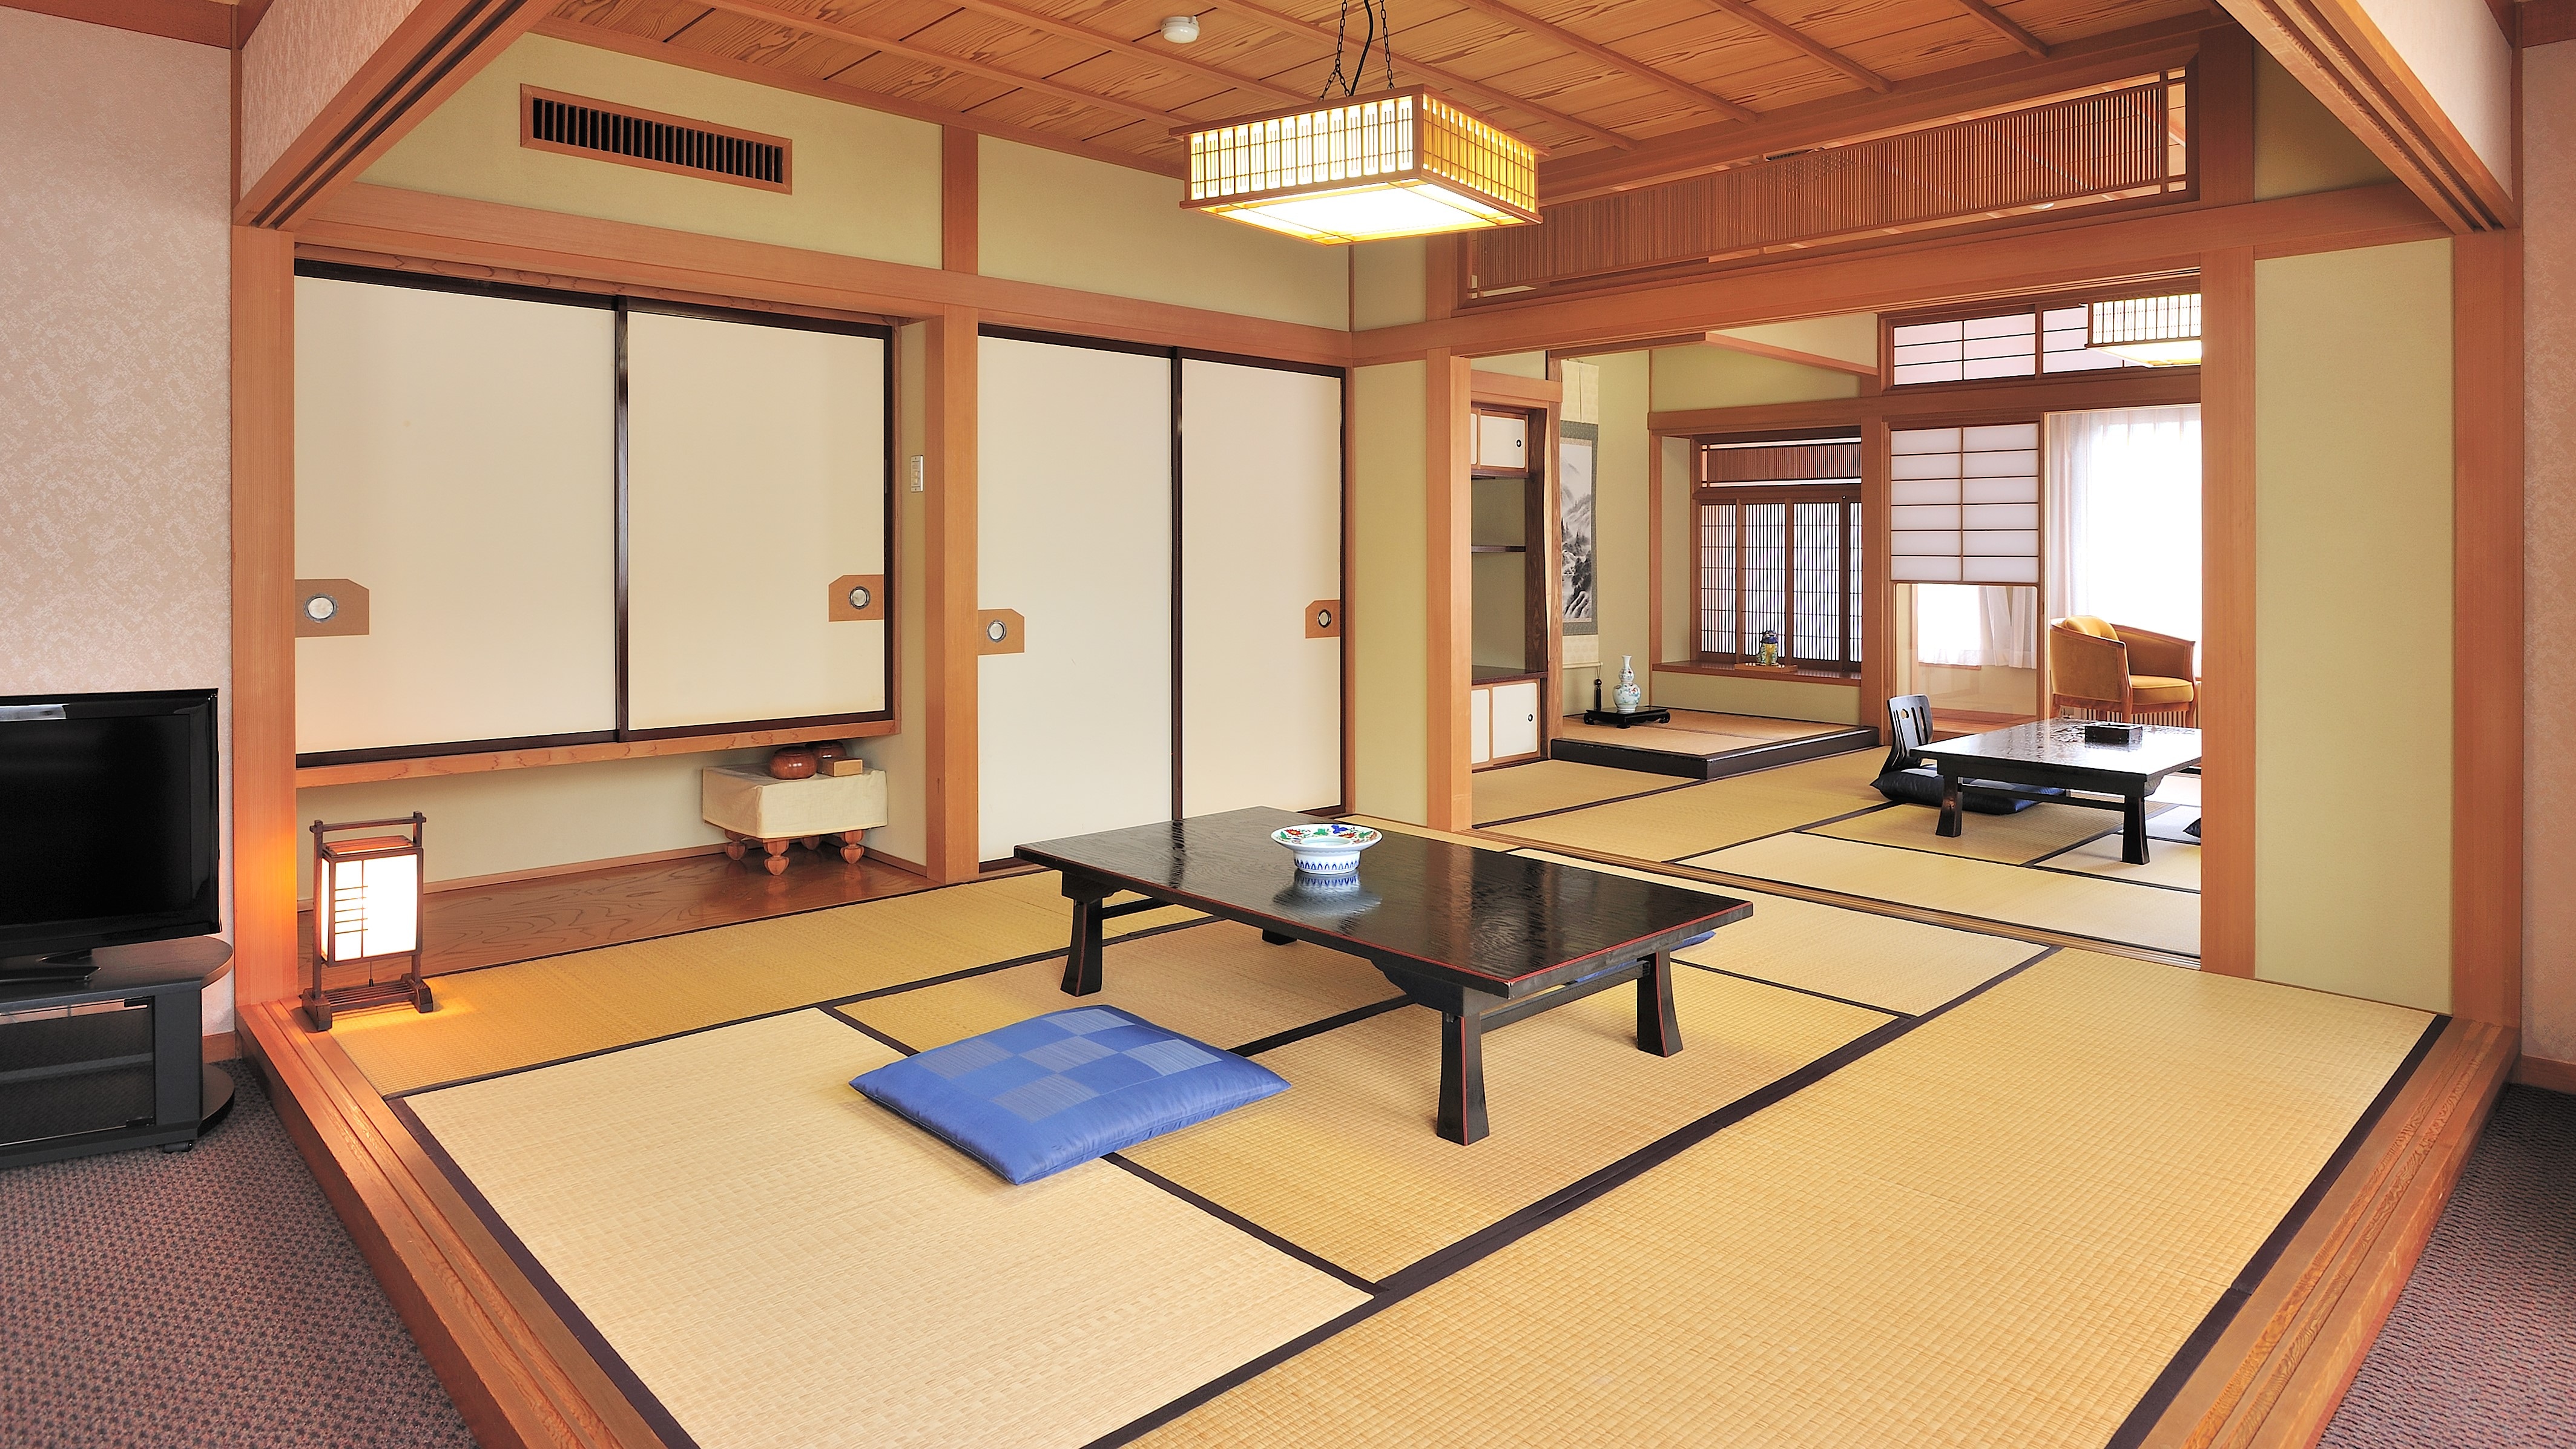 ห้องสไตล์ญี่ปุ่น 10 เสื่อทาทามิ + 6 เสื่อทาทามิ + ห้องนั่งเล่นพร้อมอ่างอาบน้ำและห้องสุขา